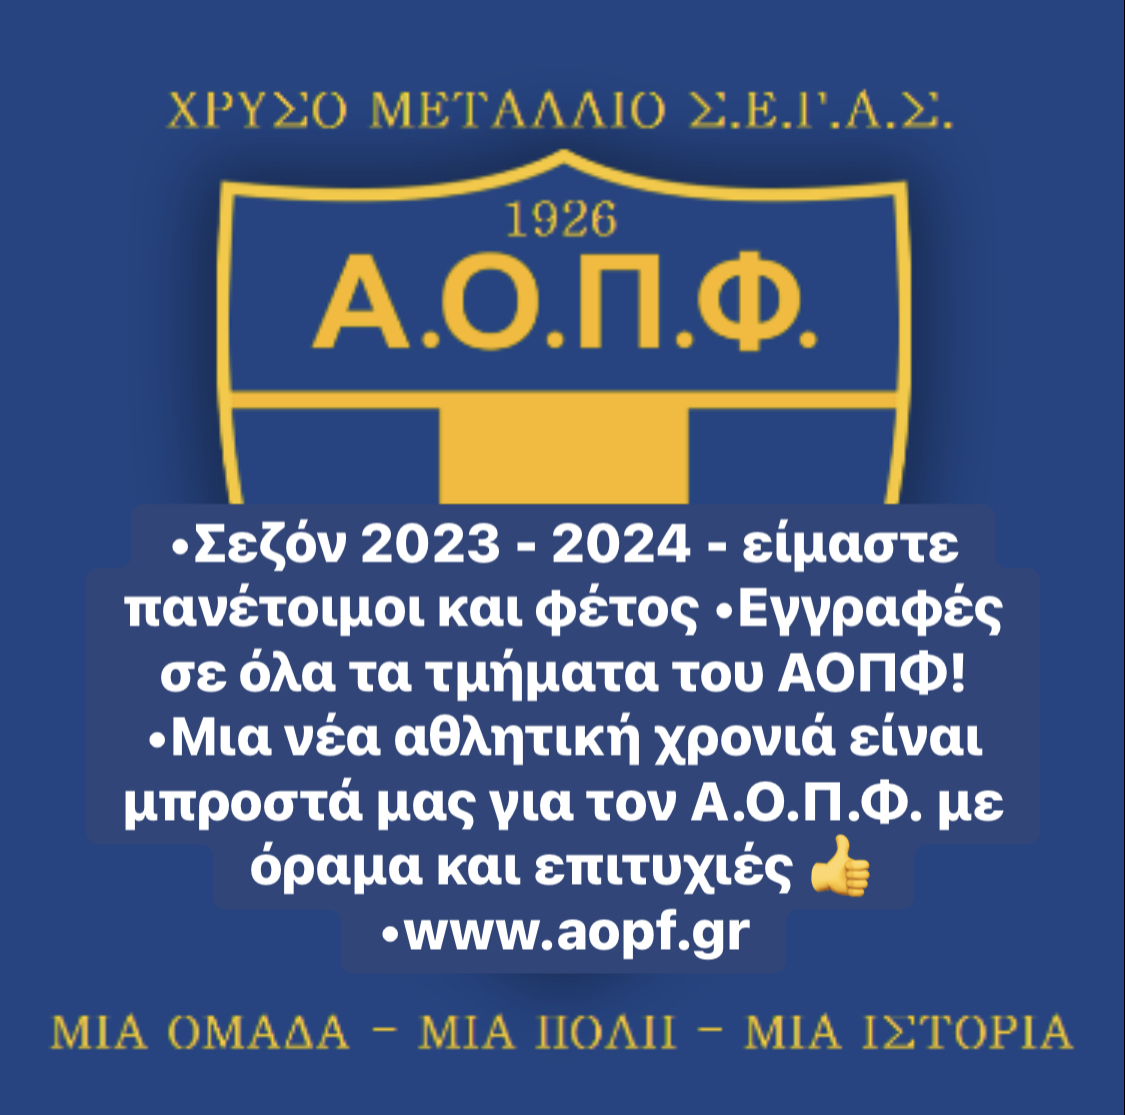 AOPF-2023-2024